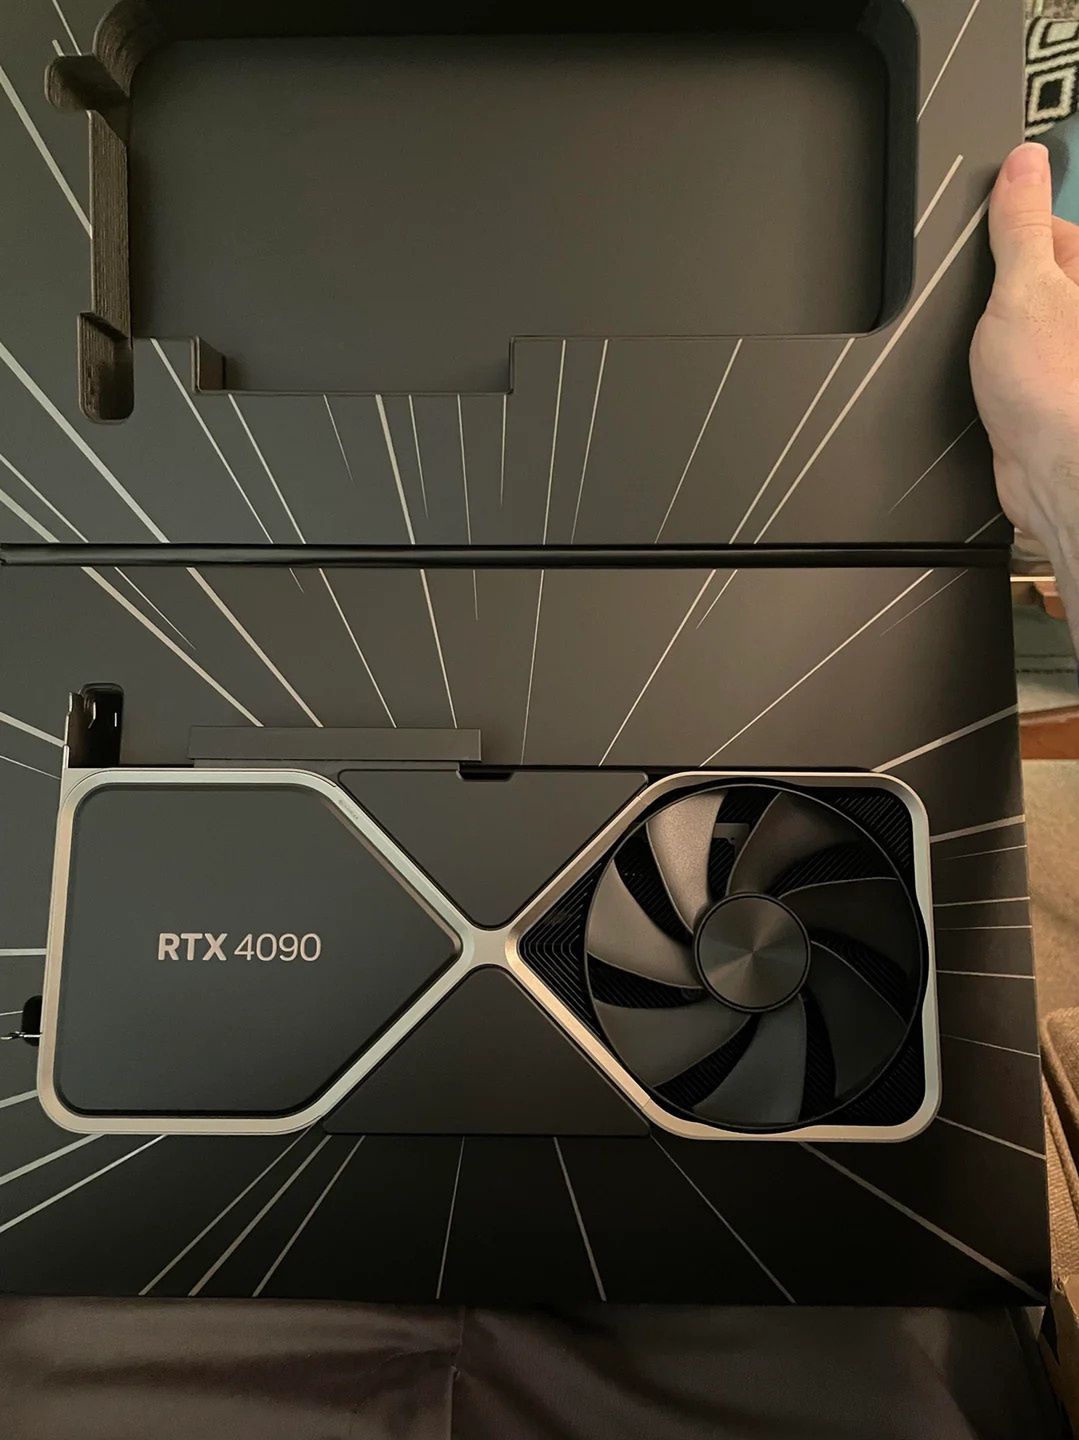 Nvidia ulepsza kartę GeForce RTX 4090. Już nie będzie się palić?